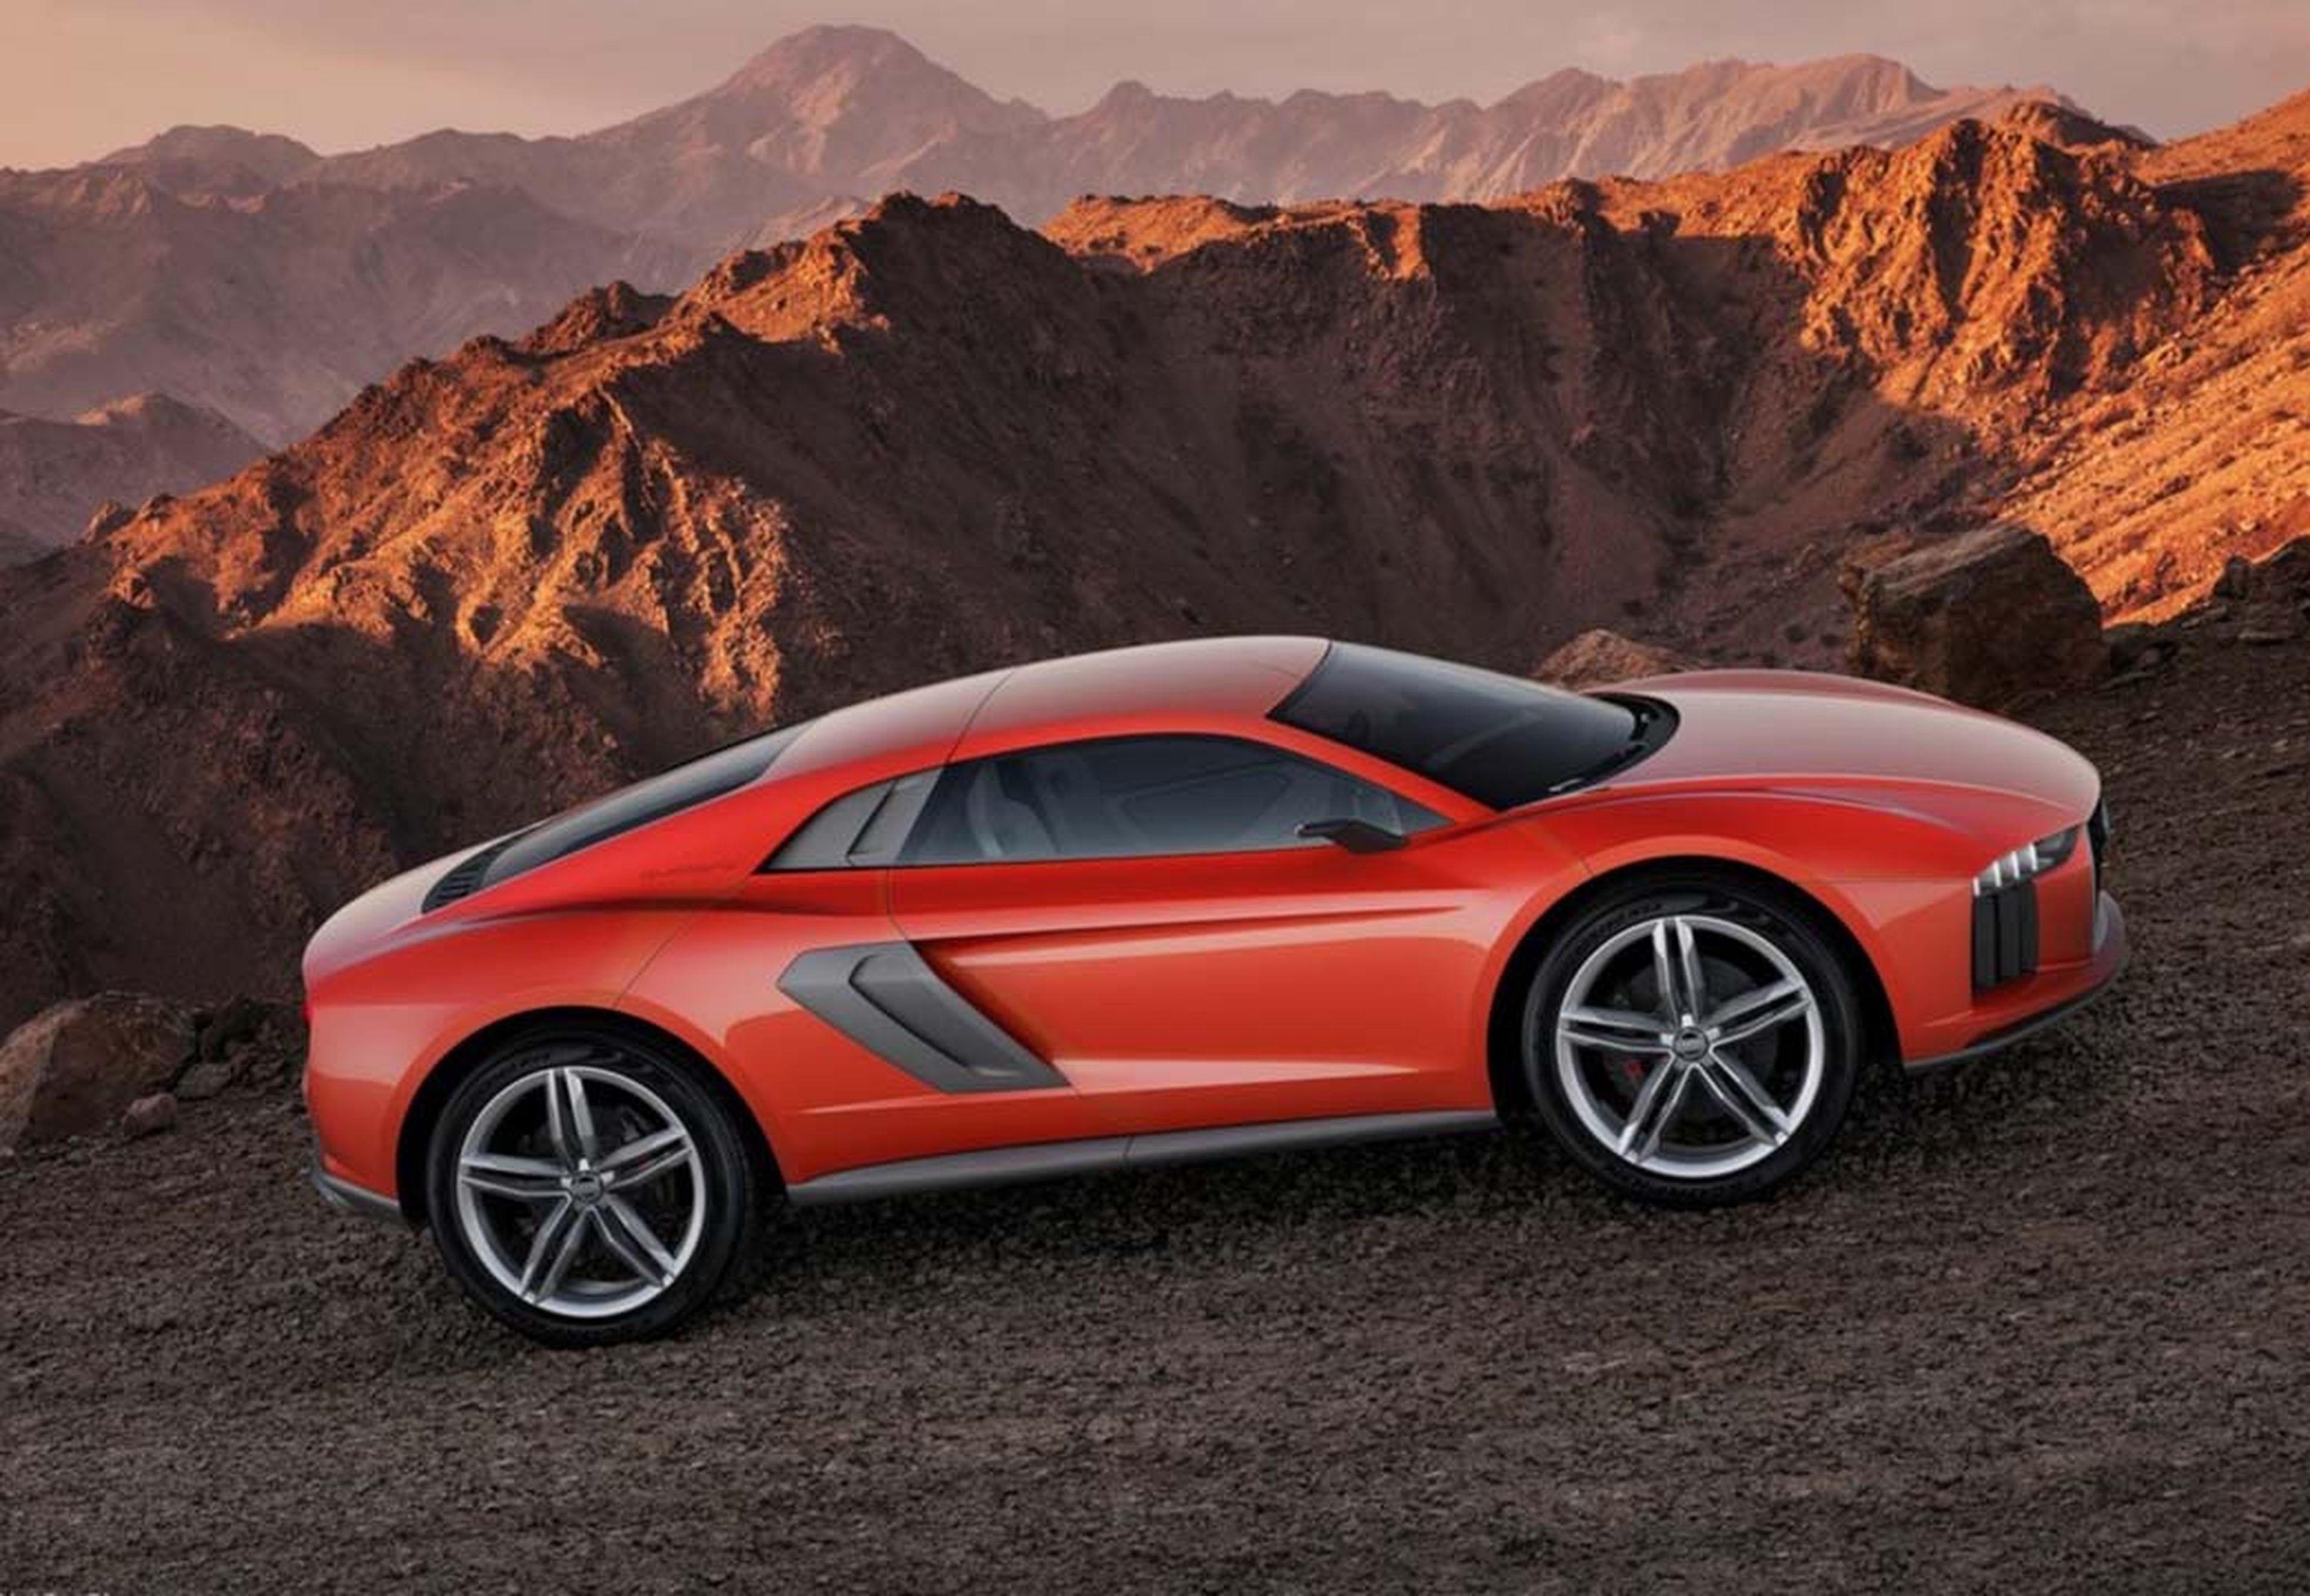 Los 7 prototipos más arriesgados de la historia de Audi